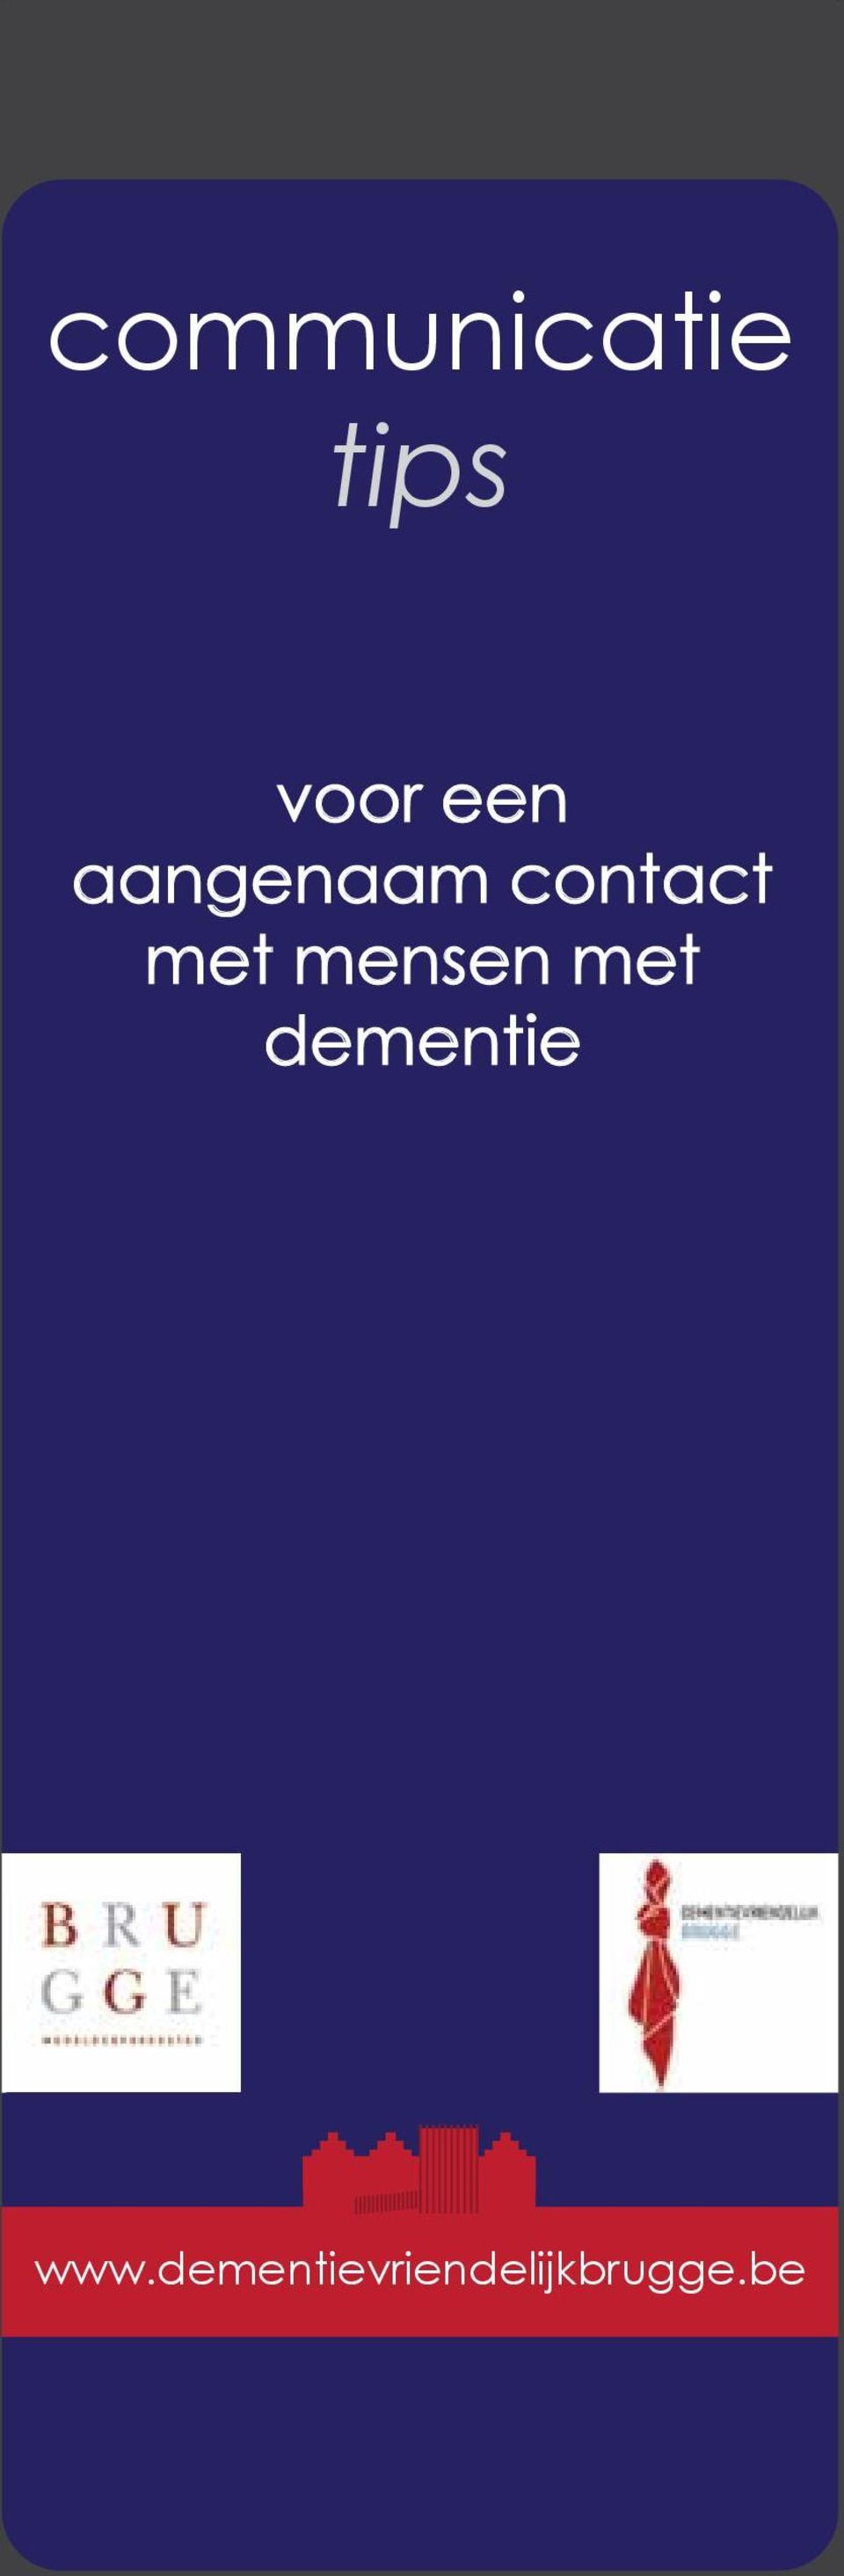 mensen met dementie www.